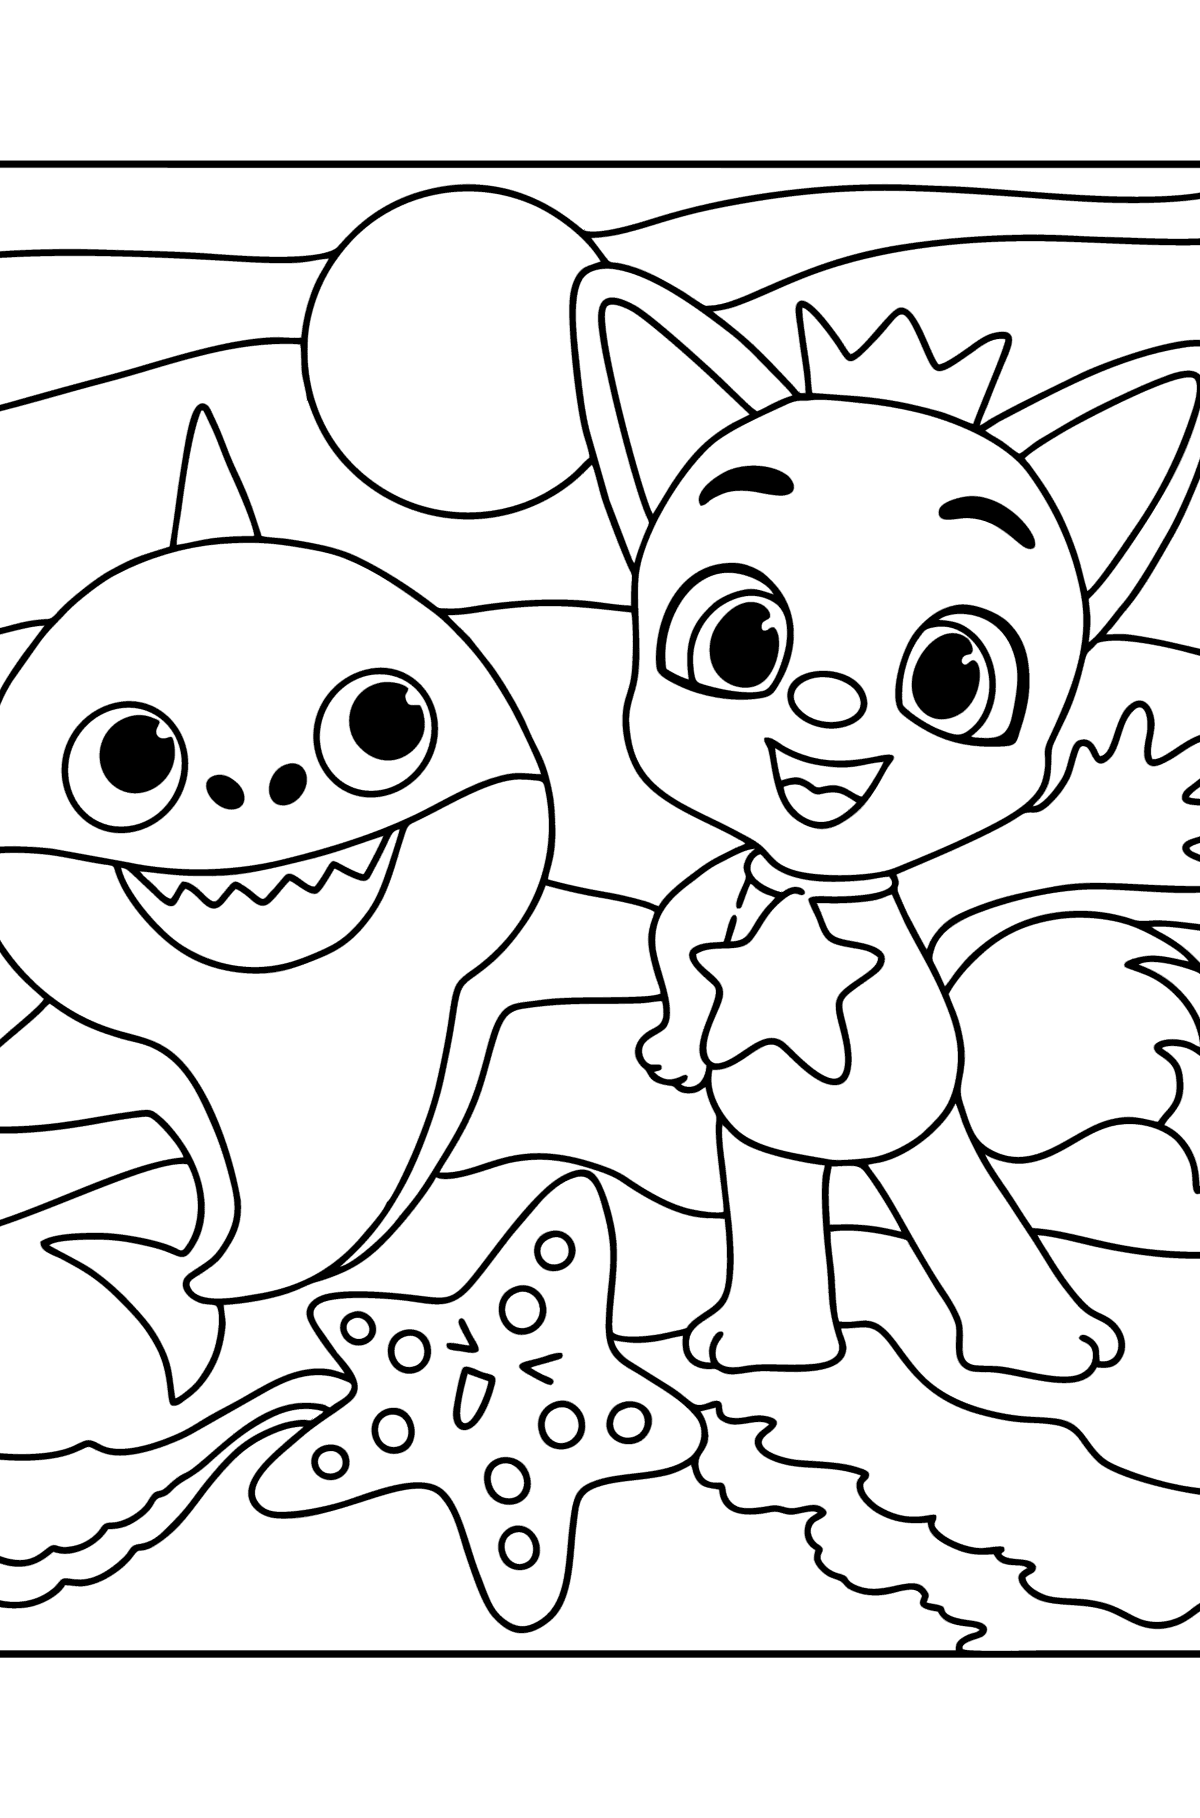 Раскраска Pinkfong Беби Шарк (Baby shark) - Картинки для Детей